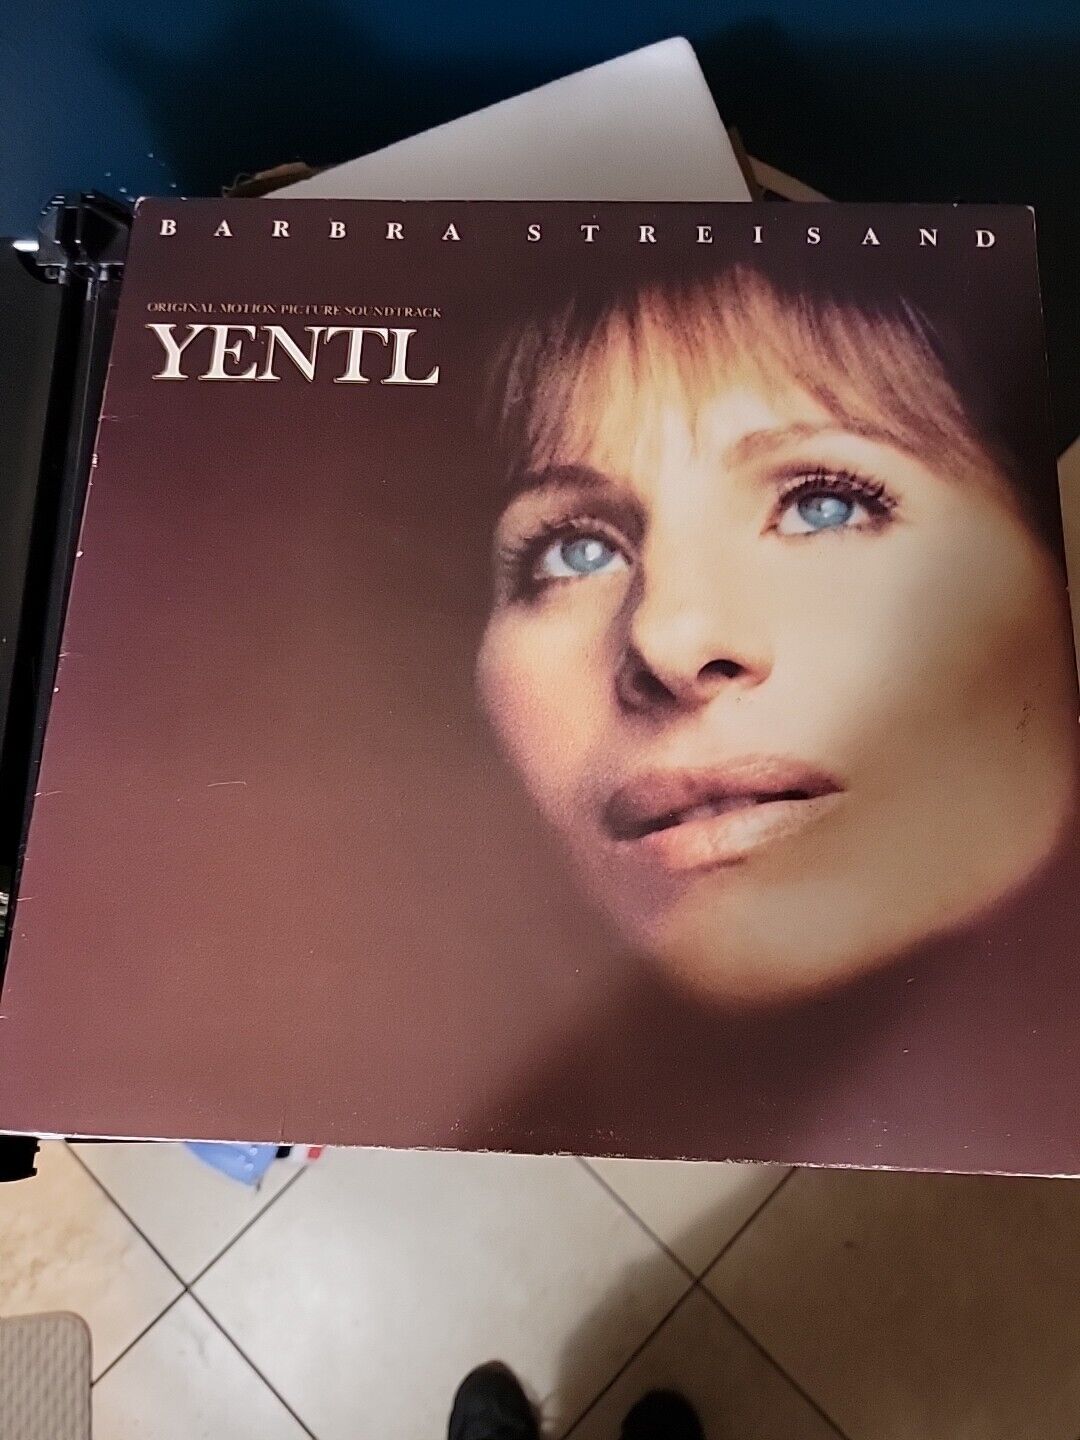 Yentl Barbra Streisand Vinyl Record